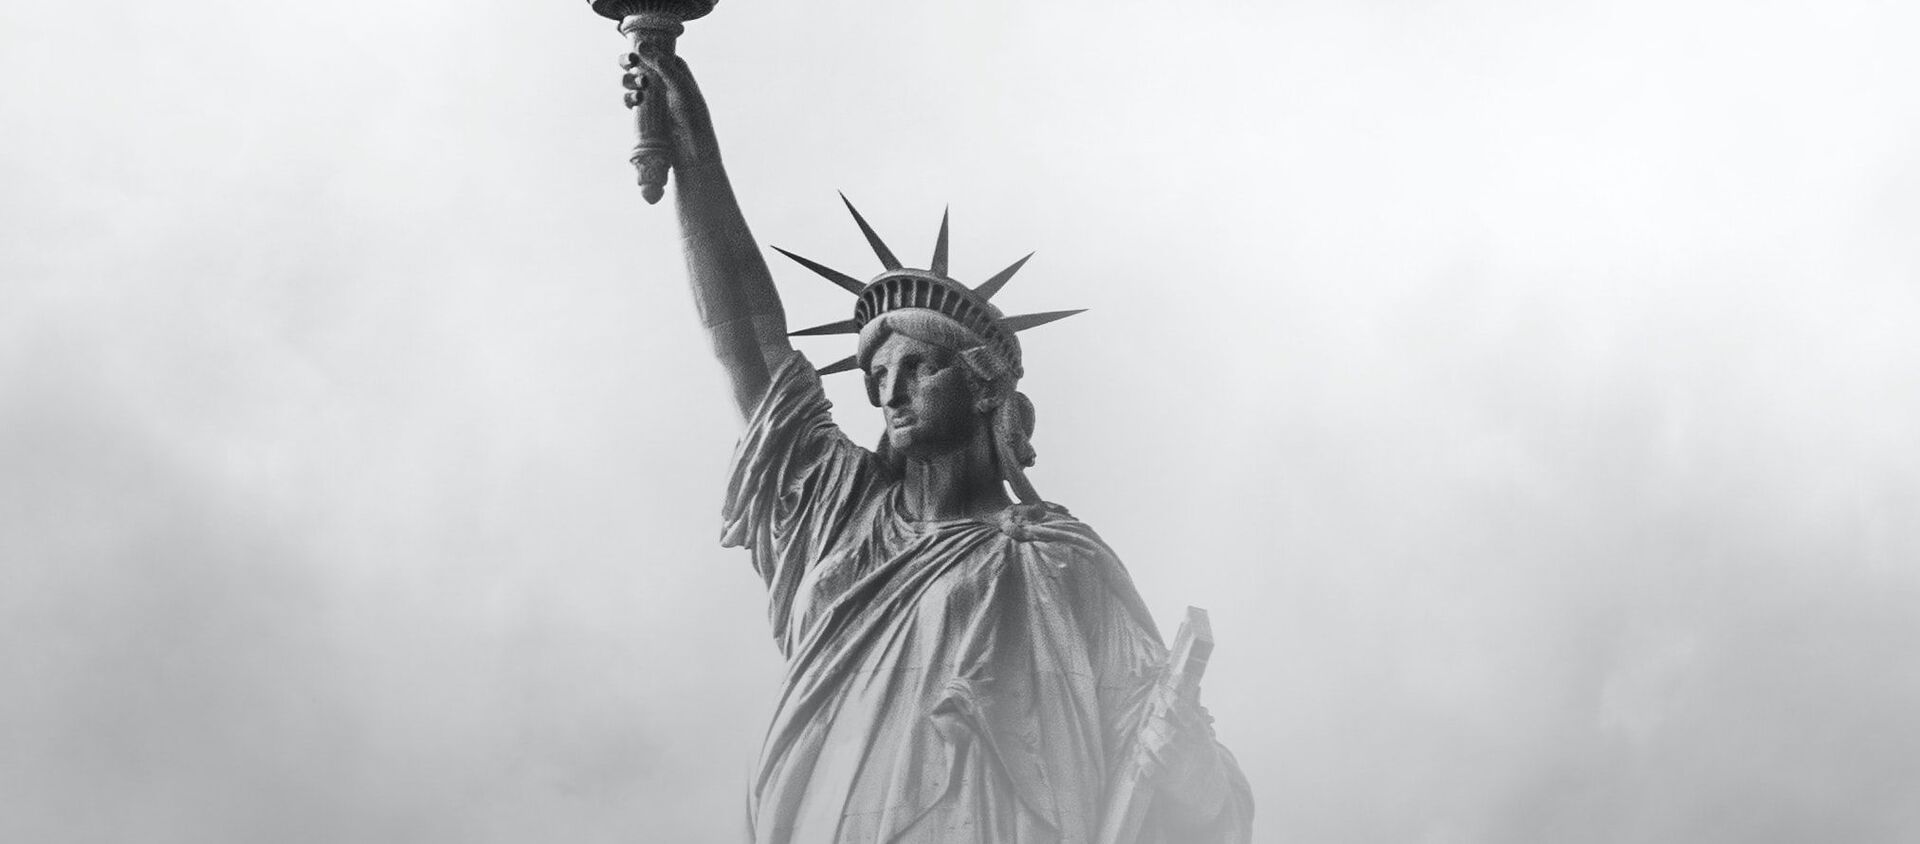 Estatua de la Libertad en nueva York  - Sputnik Mundo, 1920, 25.07.2020